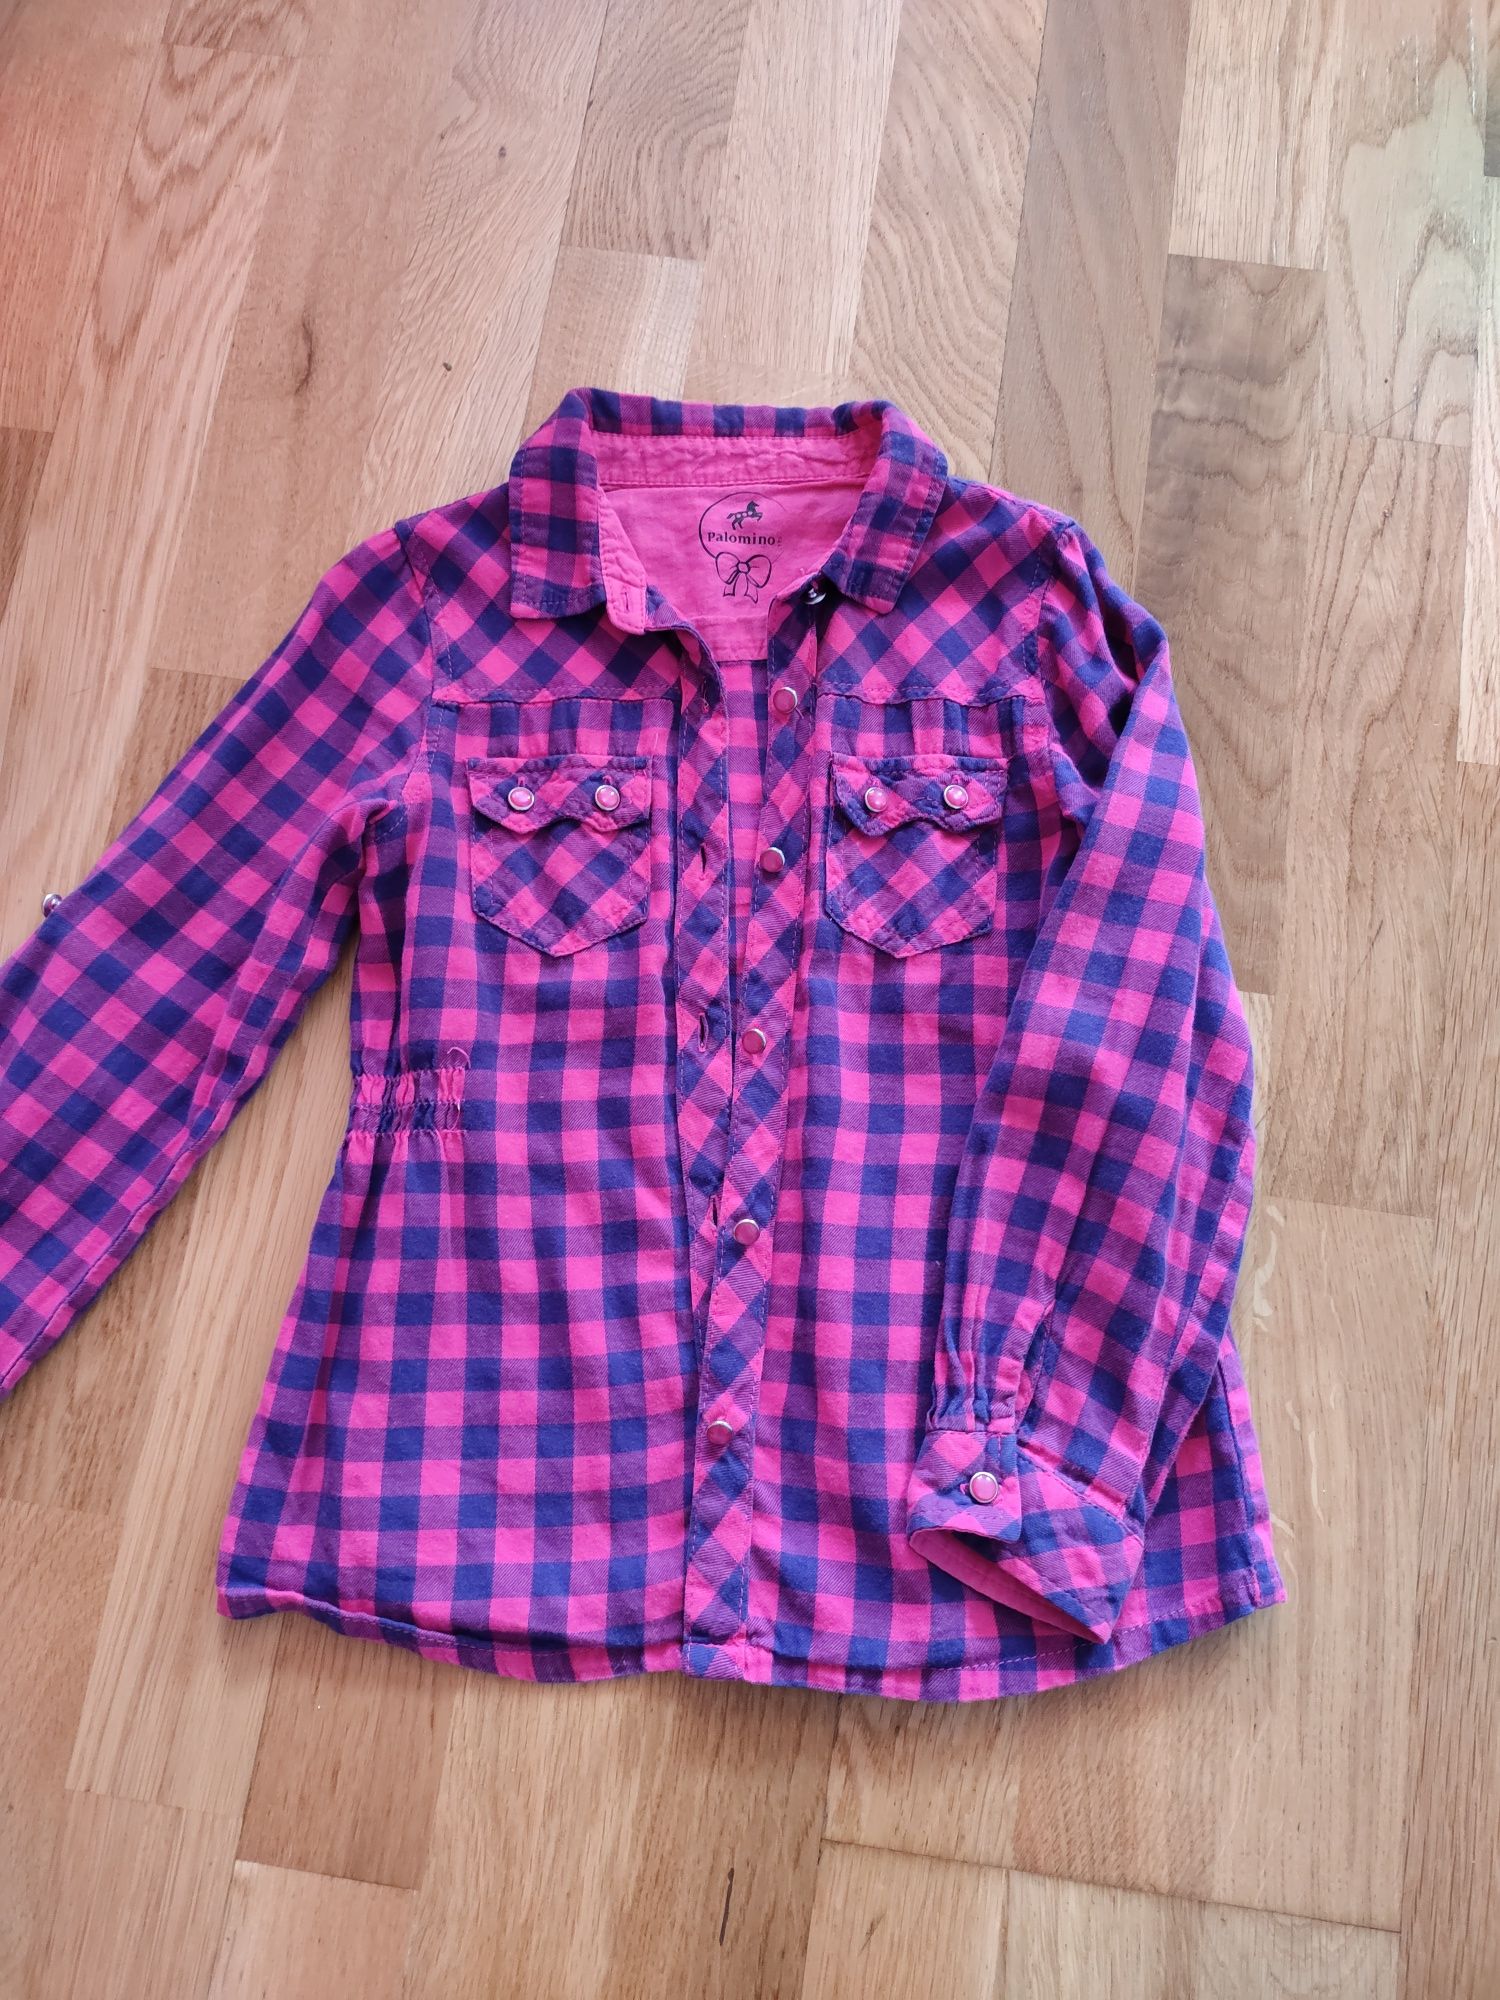 памучна розова риза за дете 4 -5 г, размер 116